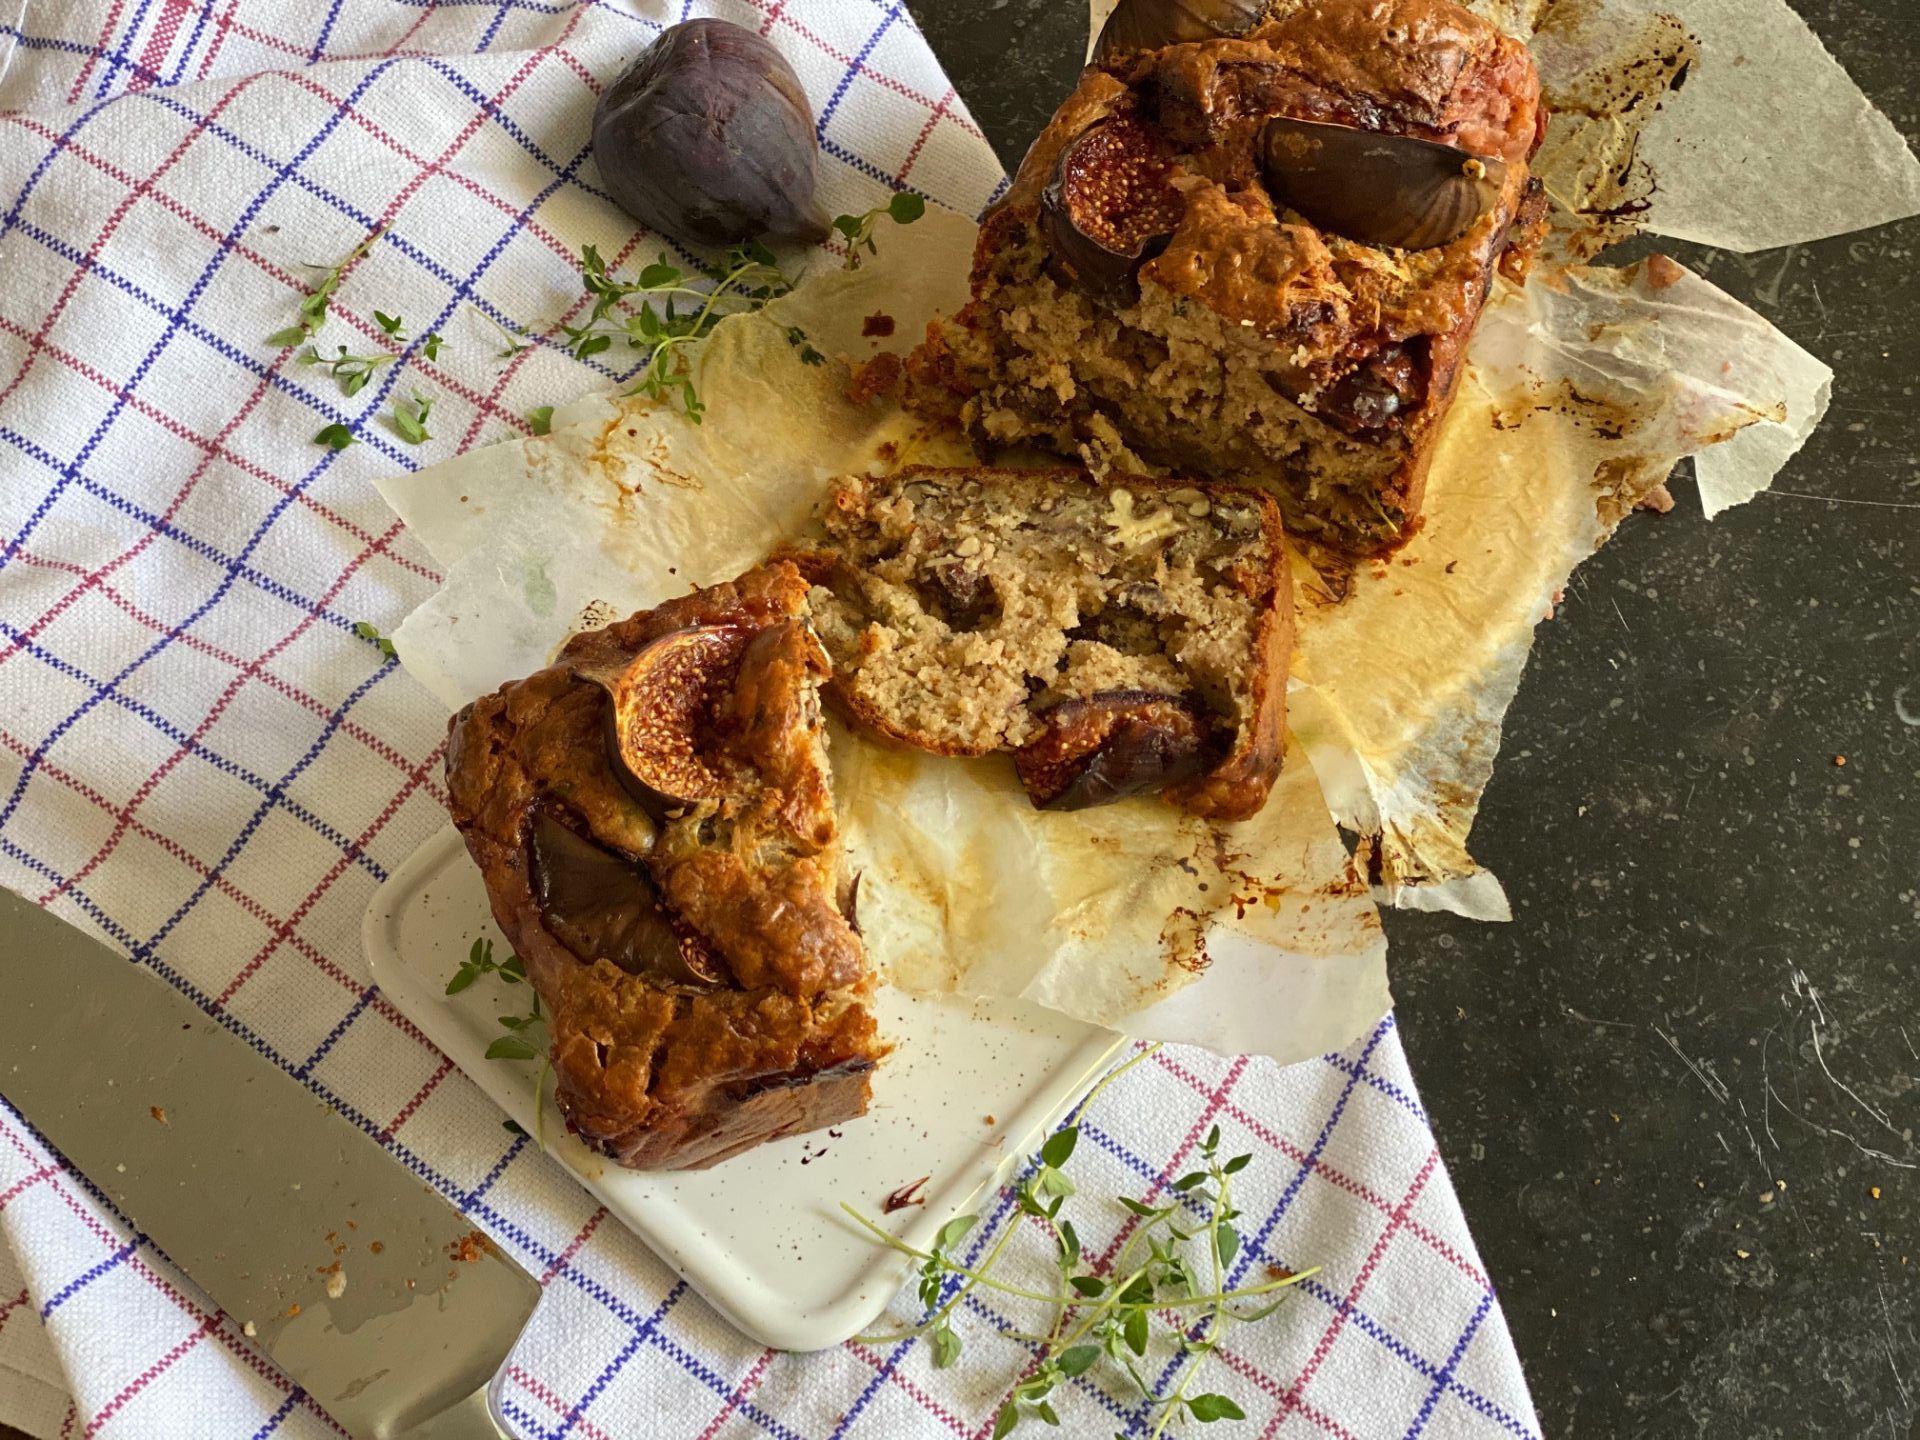 Hartige cake met vijgen, walnoten en geitenkaas van Foodblog Foodinista